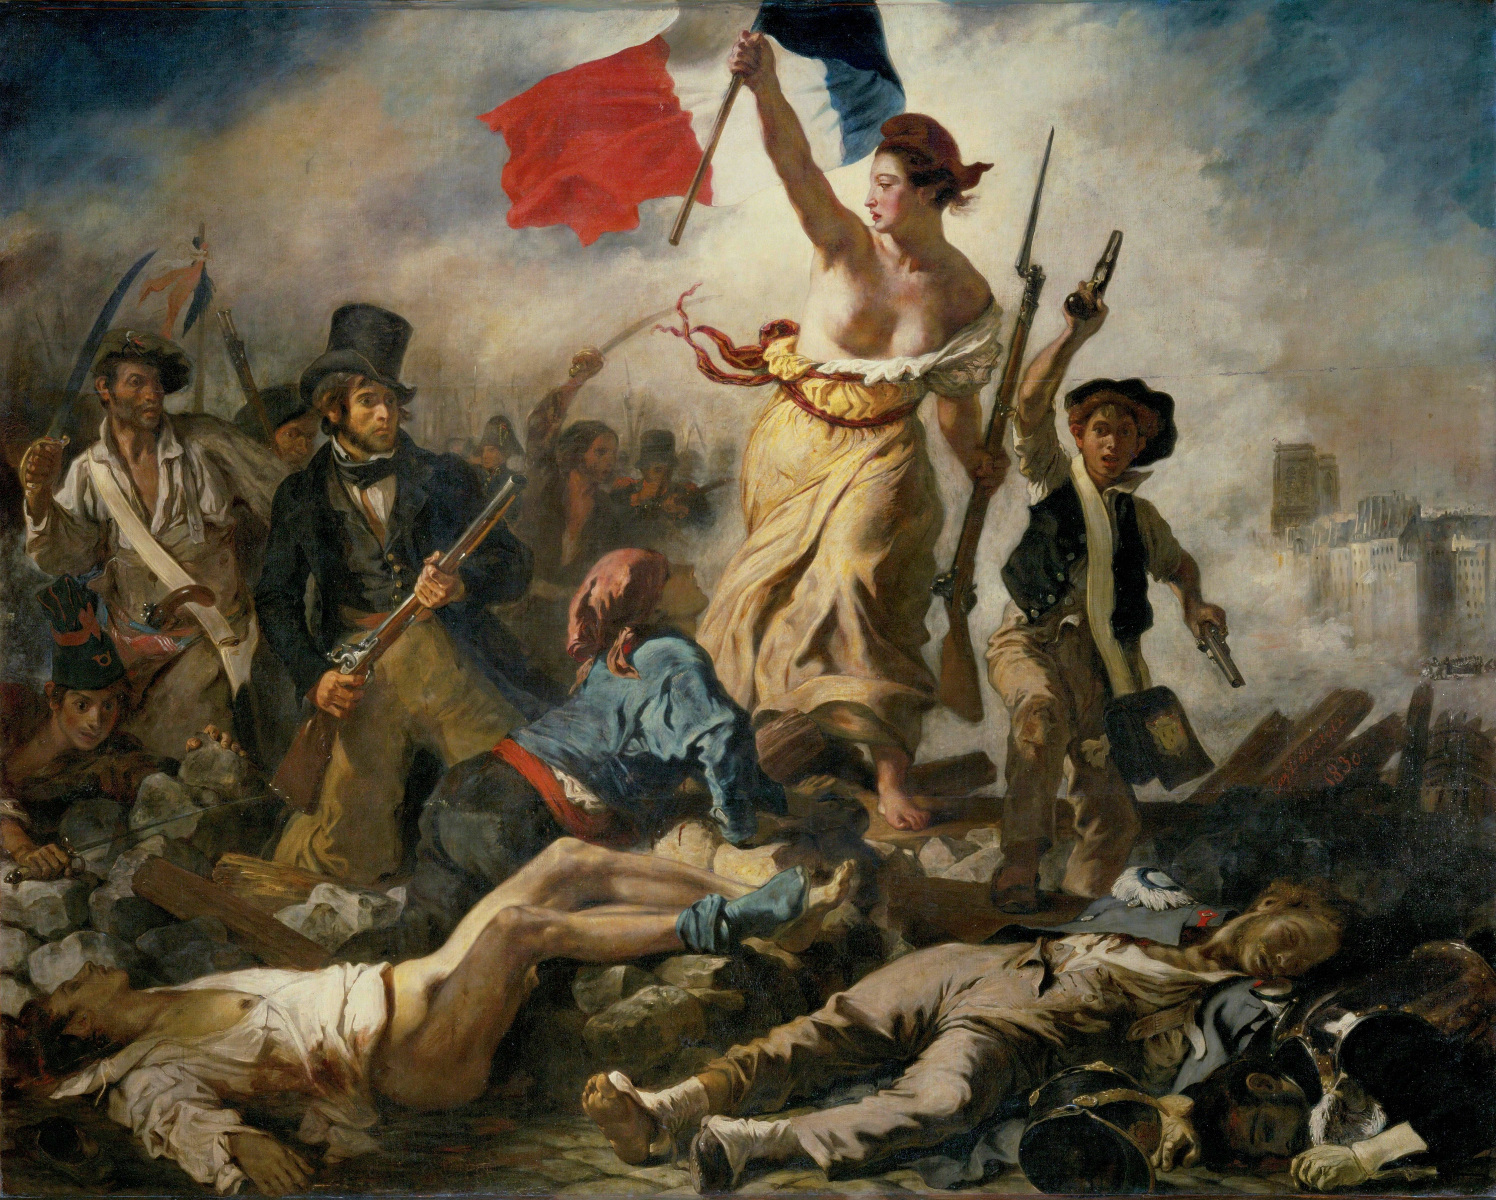 Foto: Eugène Delacroix - La libertà che guida il popolo (La Liberté guidant le peuple), 1830, olio su tela, 260 x 325 cm. © Museo del Louvre, Parigi